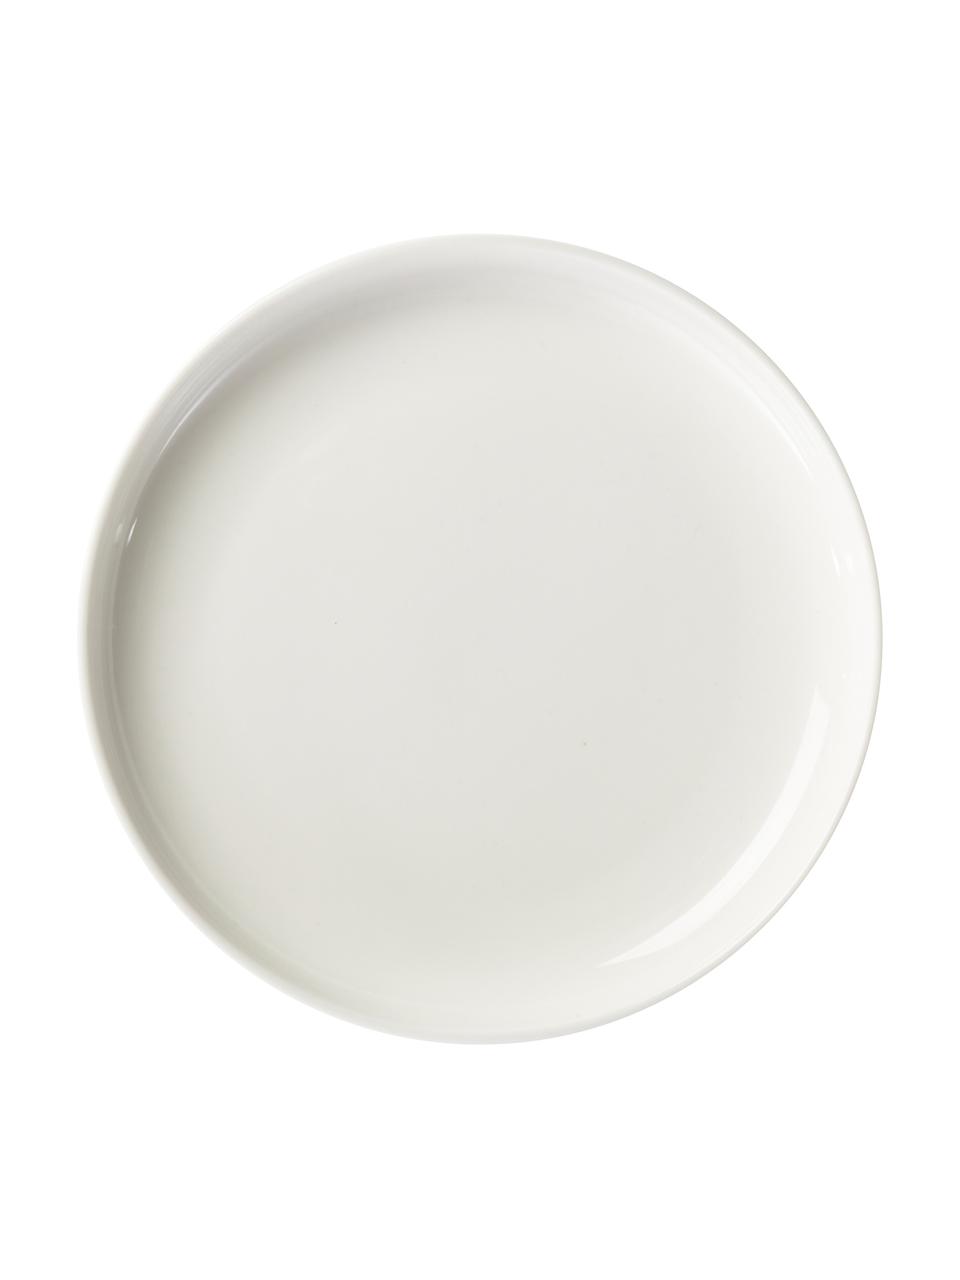 Piattino da dessert in porcellana Nessa 2 pz, Porcellana a pasta dura di alta qualità, Bianco, Ø 19 cm